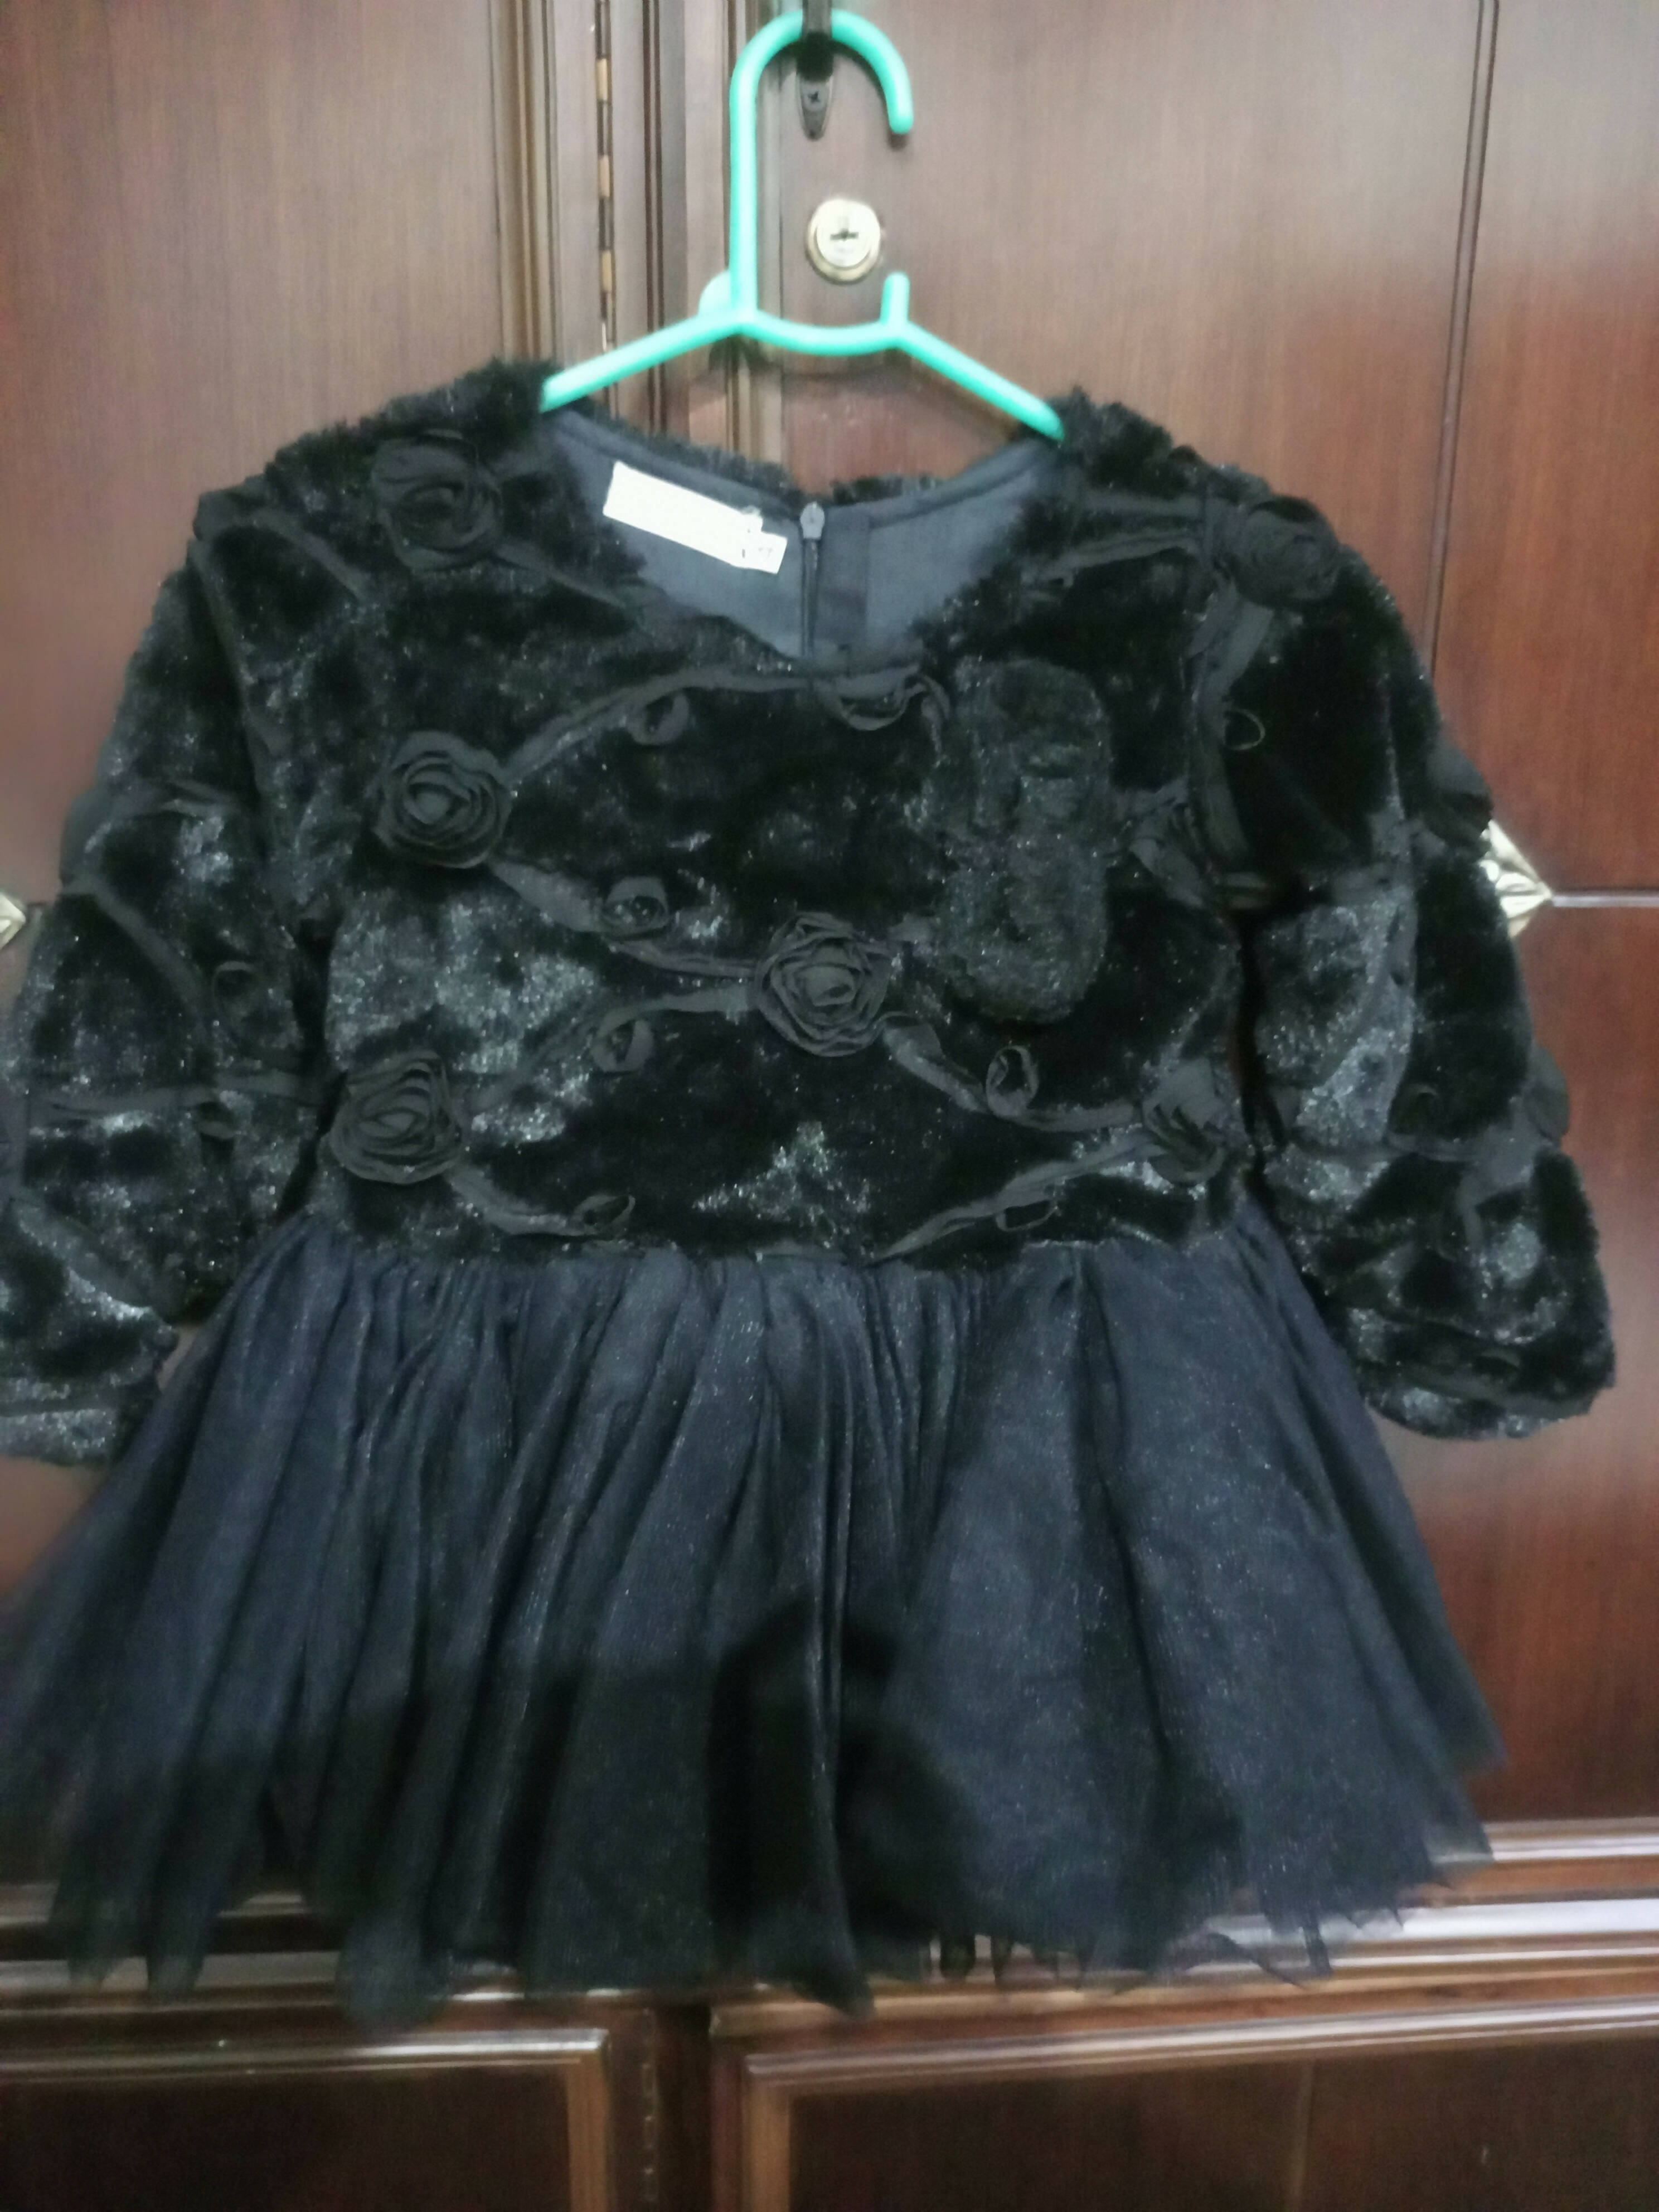 Stylish Black Velvet Frok | Girls Skirts & Dresses | 3-4 year baby girl | Worn Once